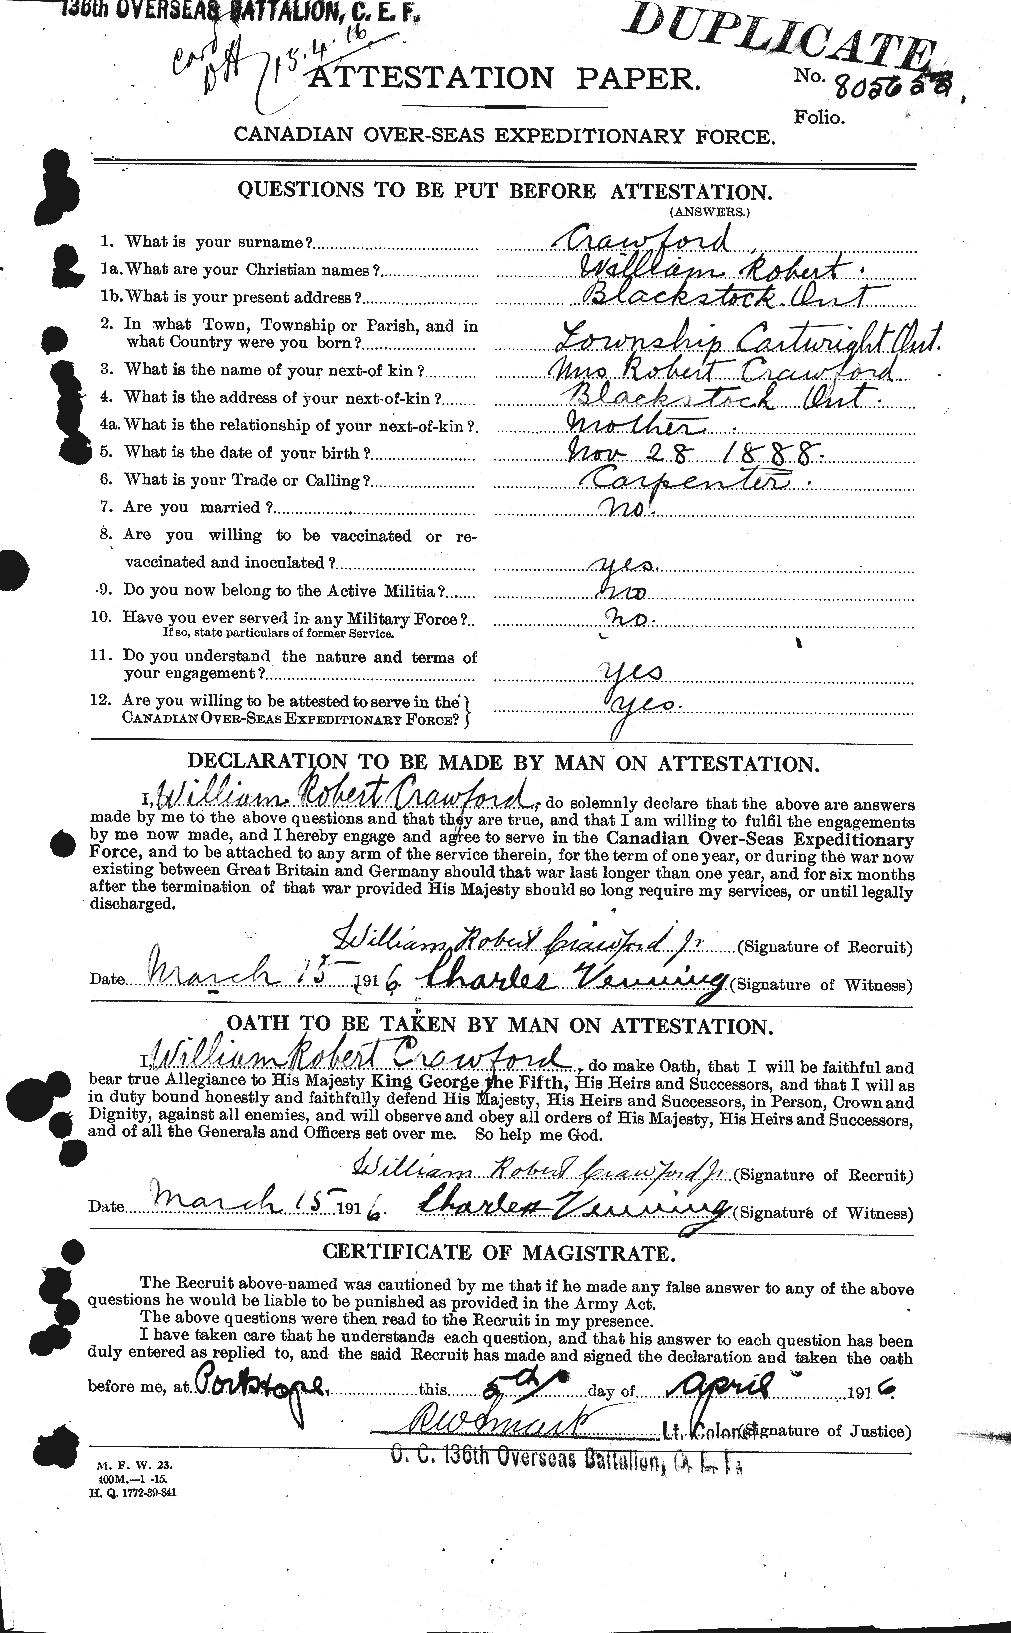 Dossiers du Personnel de la Première Guerre mondiale - CEC 060686a